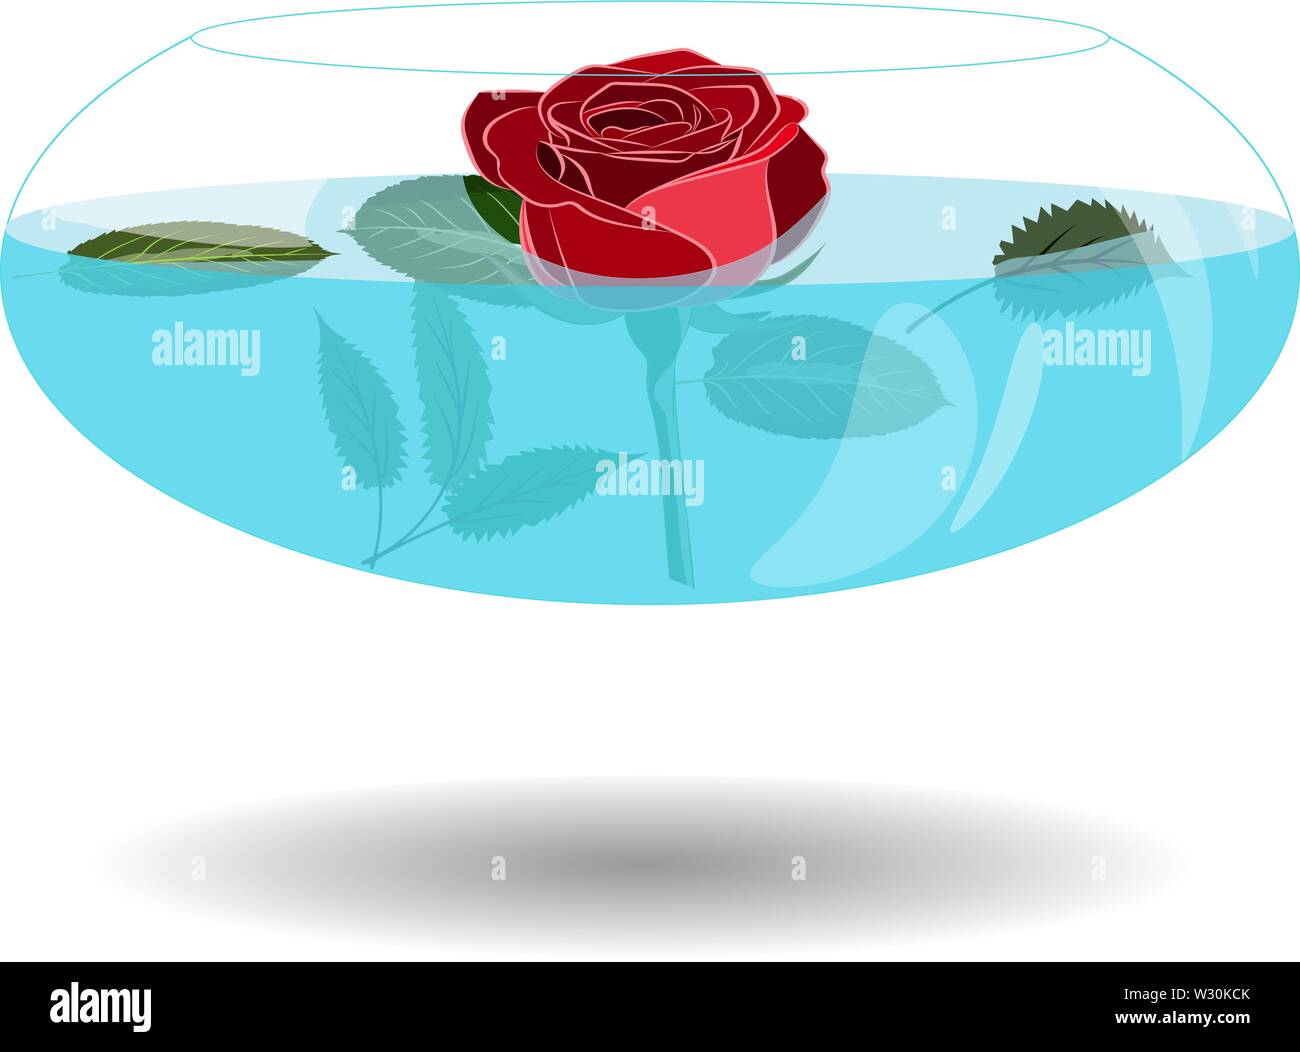 Scarlet Rose in einer Vase mit Wasser. Vector Illustration schöne Rose in Nizza transparente Schüssel mit Wasser. Single Rose In Vase für die Begrüßung Stock Vektor